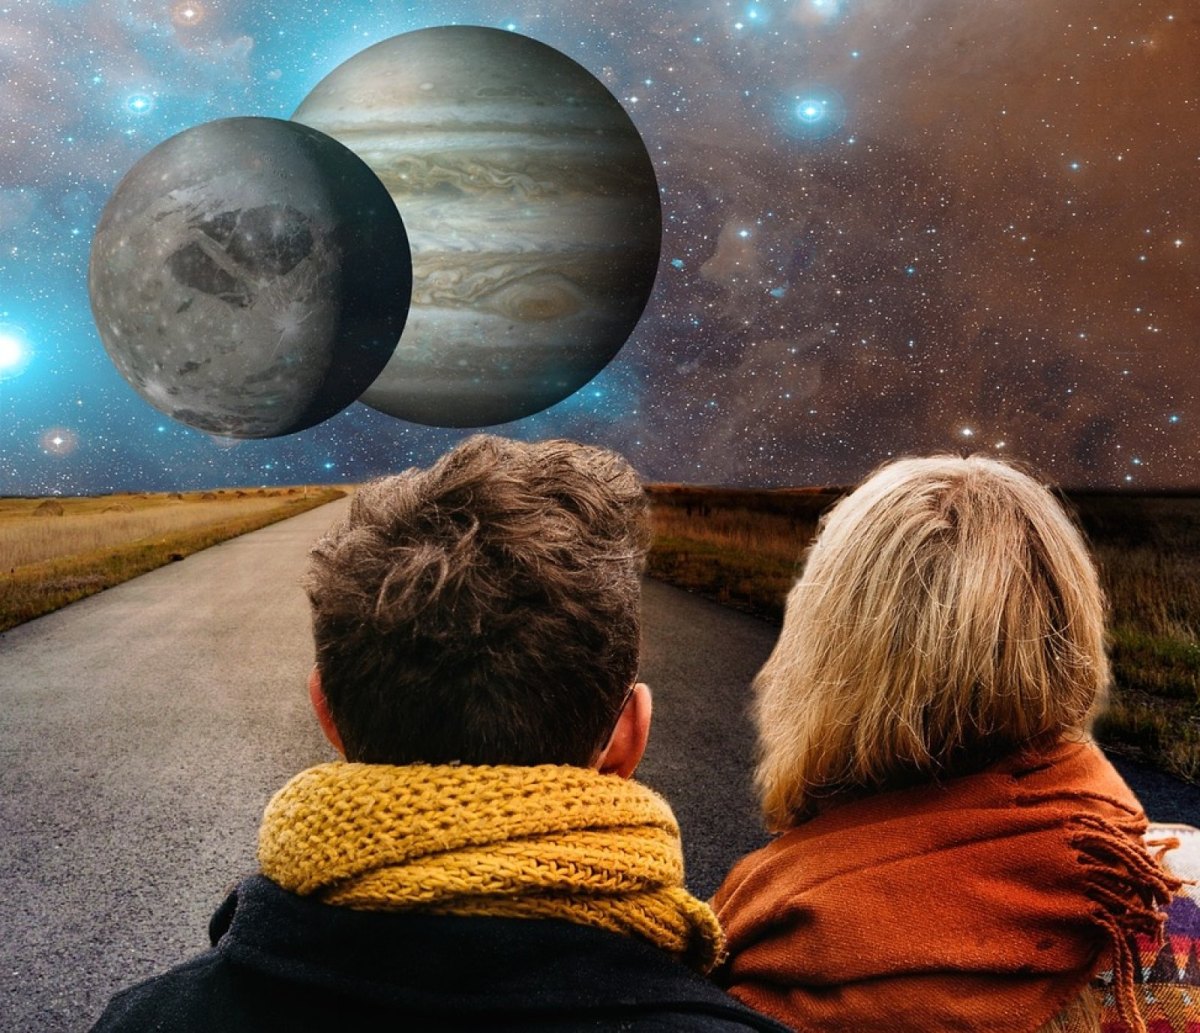 Mann und Frau stehen auf einer Straße und sehen ins All mit zwei Planeten